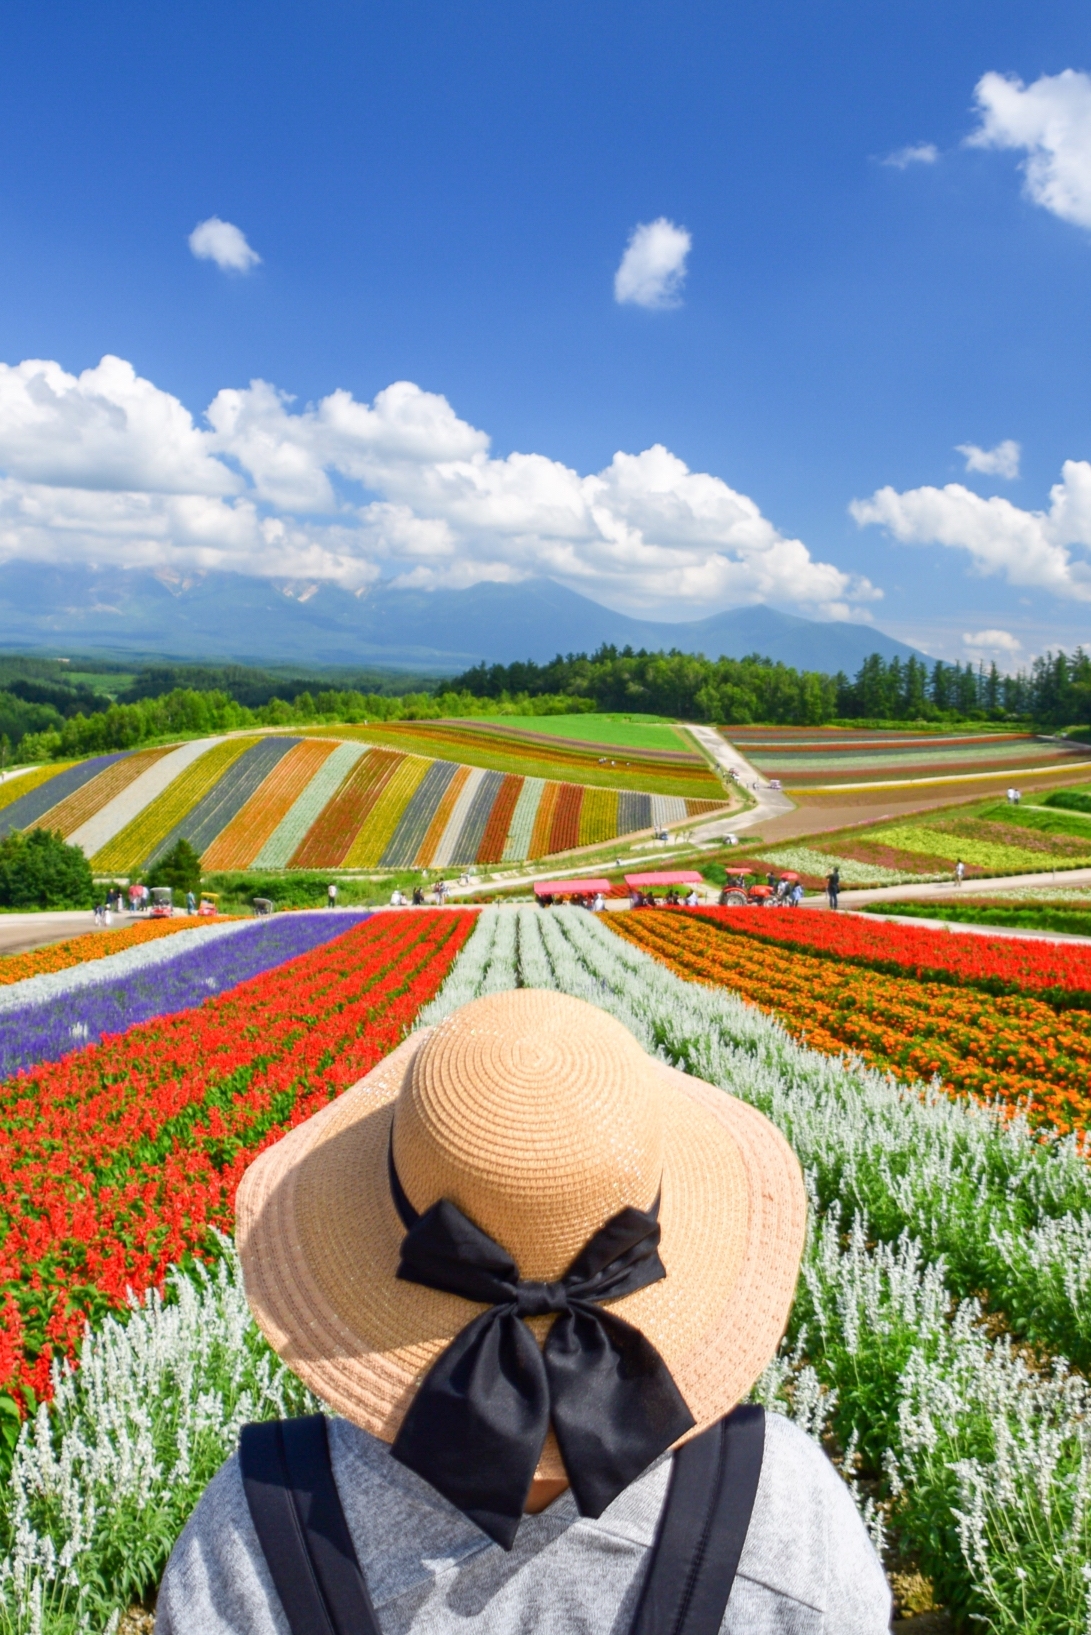 北海道 夏のカラフル 虹色花畑 四季彩の丘 Erika5ankoが投稿したフォトブック Sharee